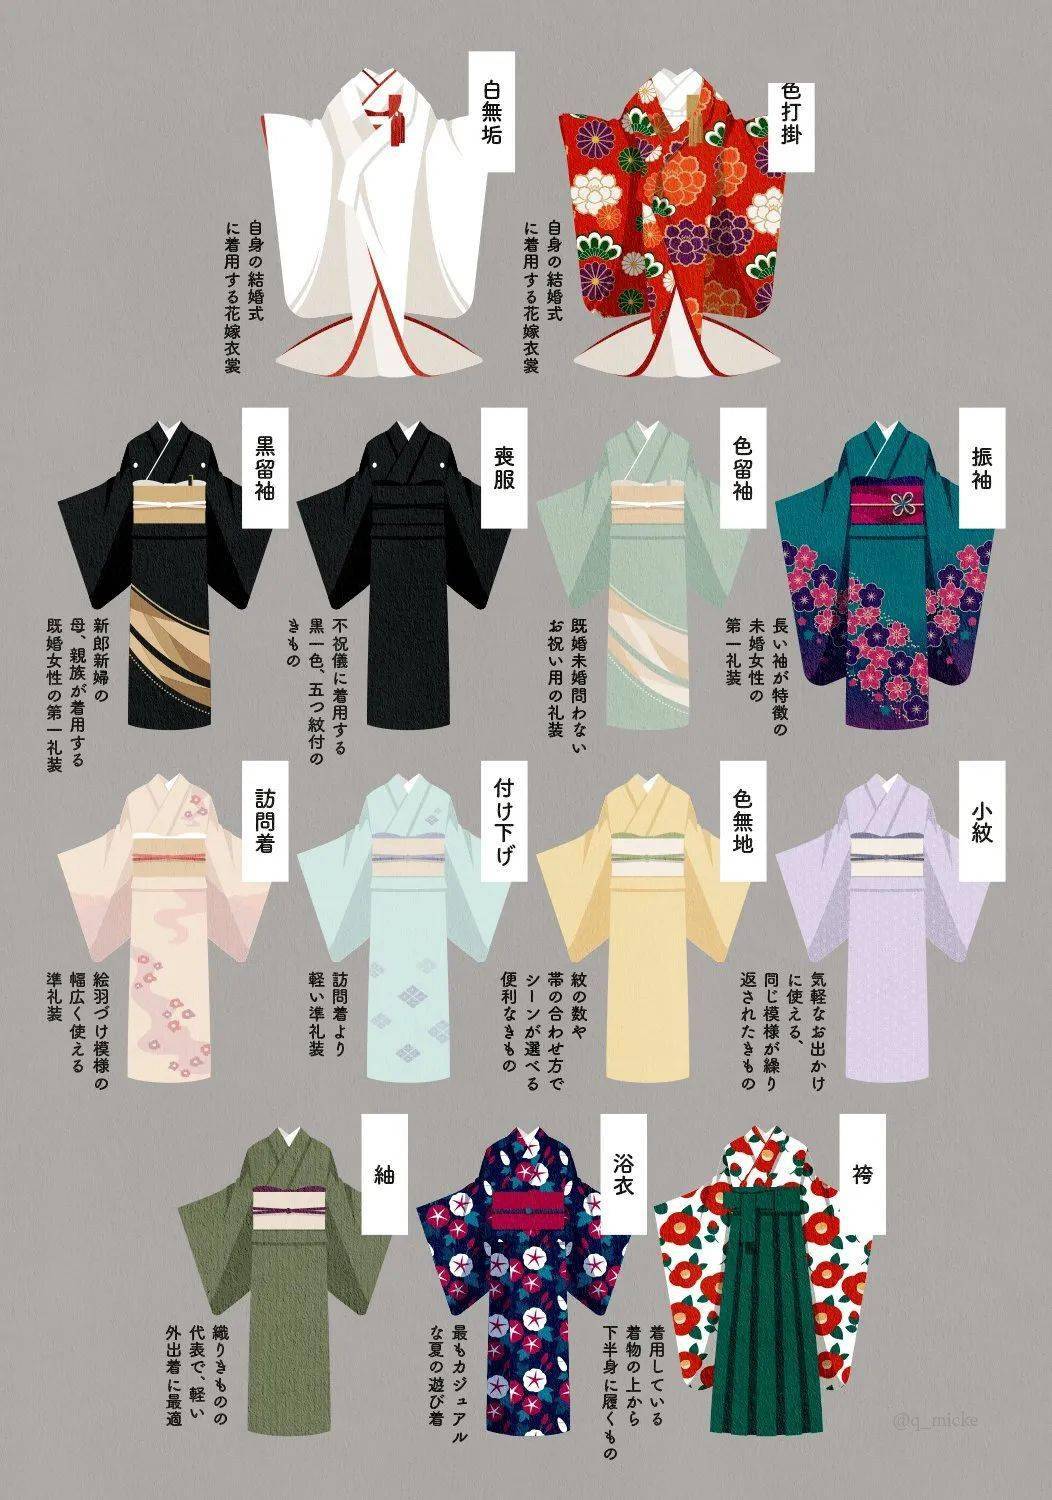 日本服饰演变图解图片